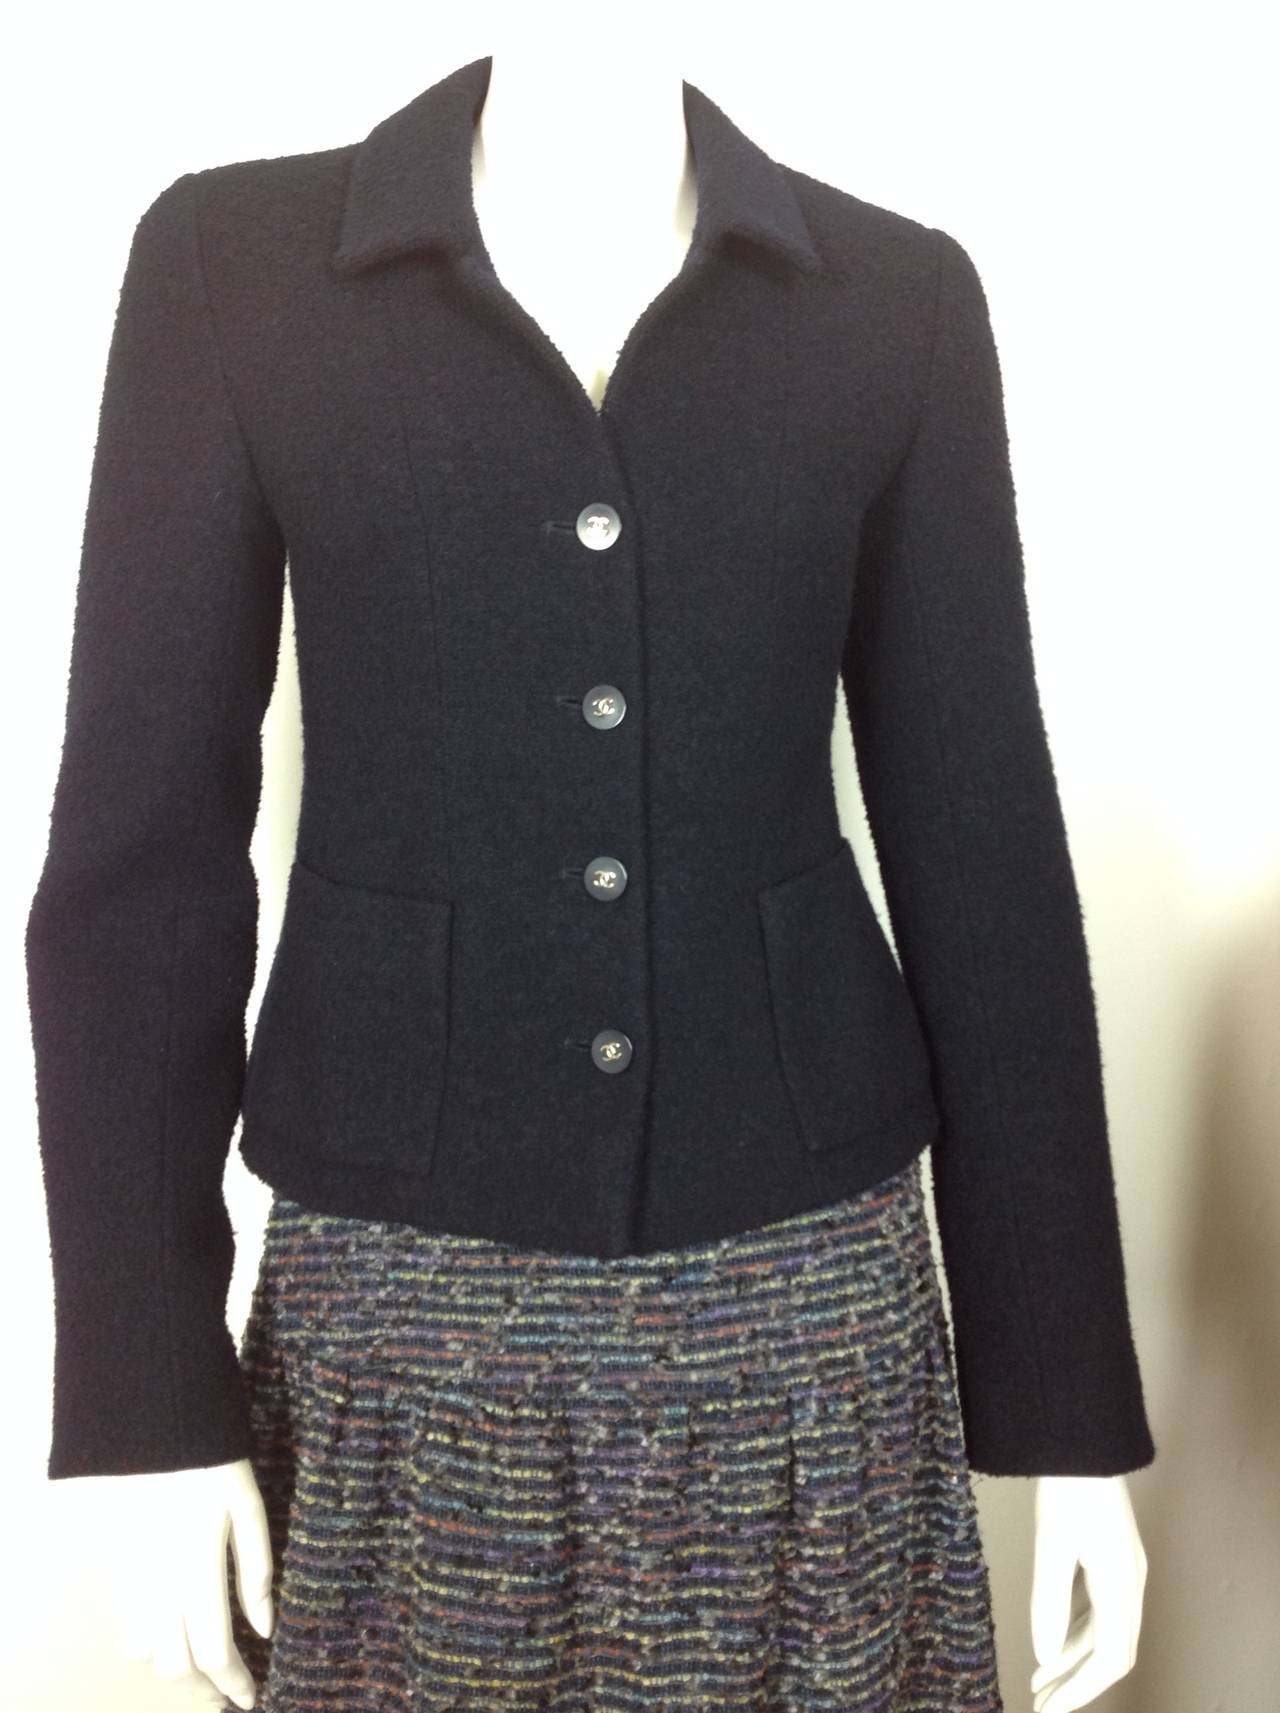 Chanel tweed skirt                              Size 40 1